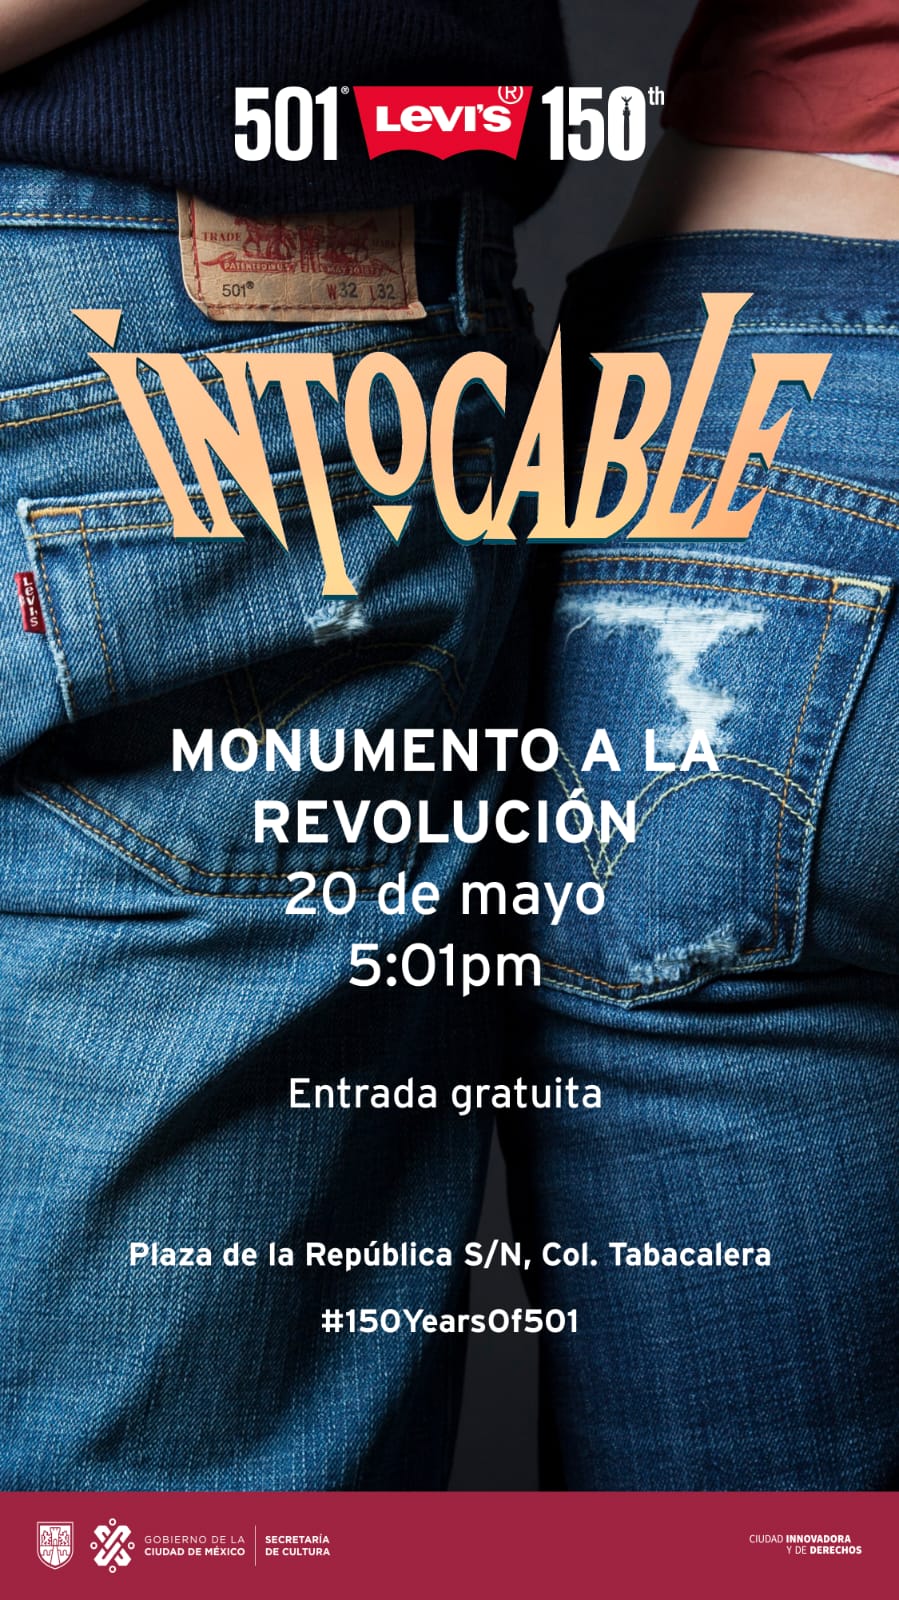 Intocable dará un concierto gratuito en el Monumento a la Revolución